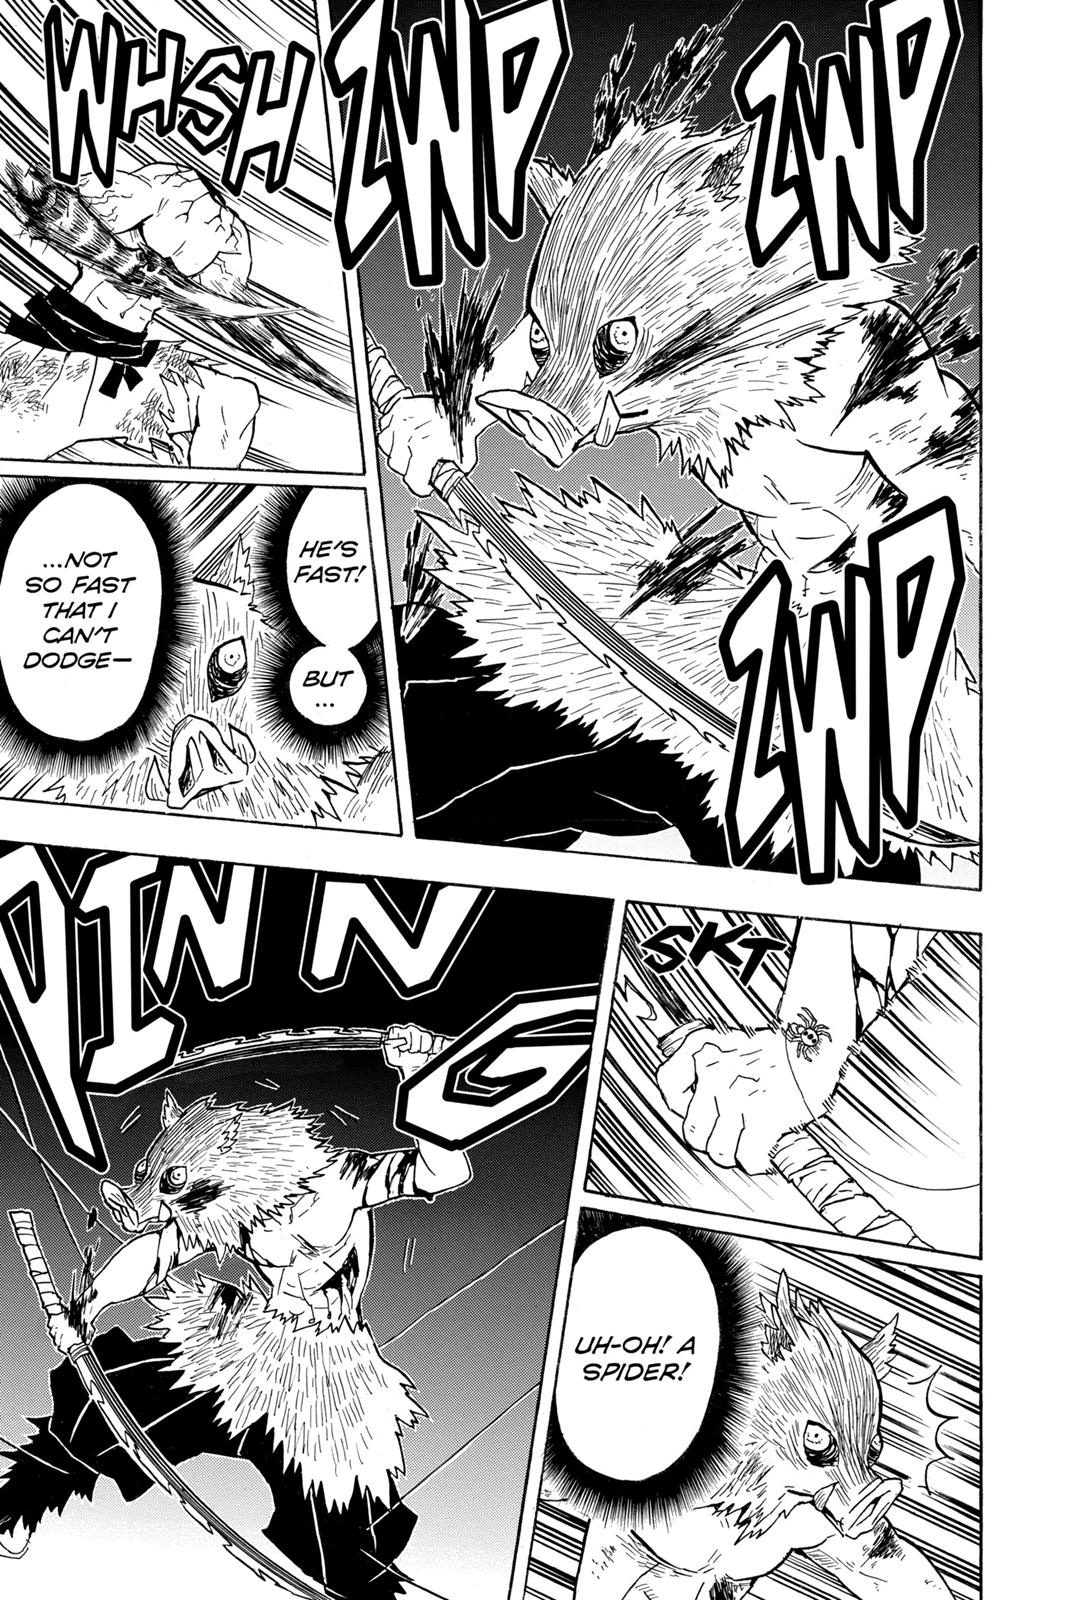 Demon Slayer Manga Manga Chapter - 31 - image 4